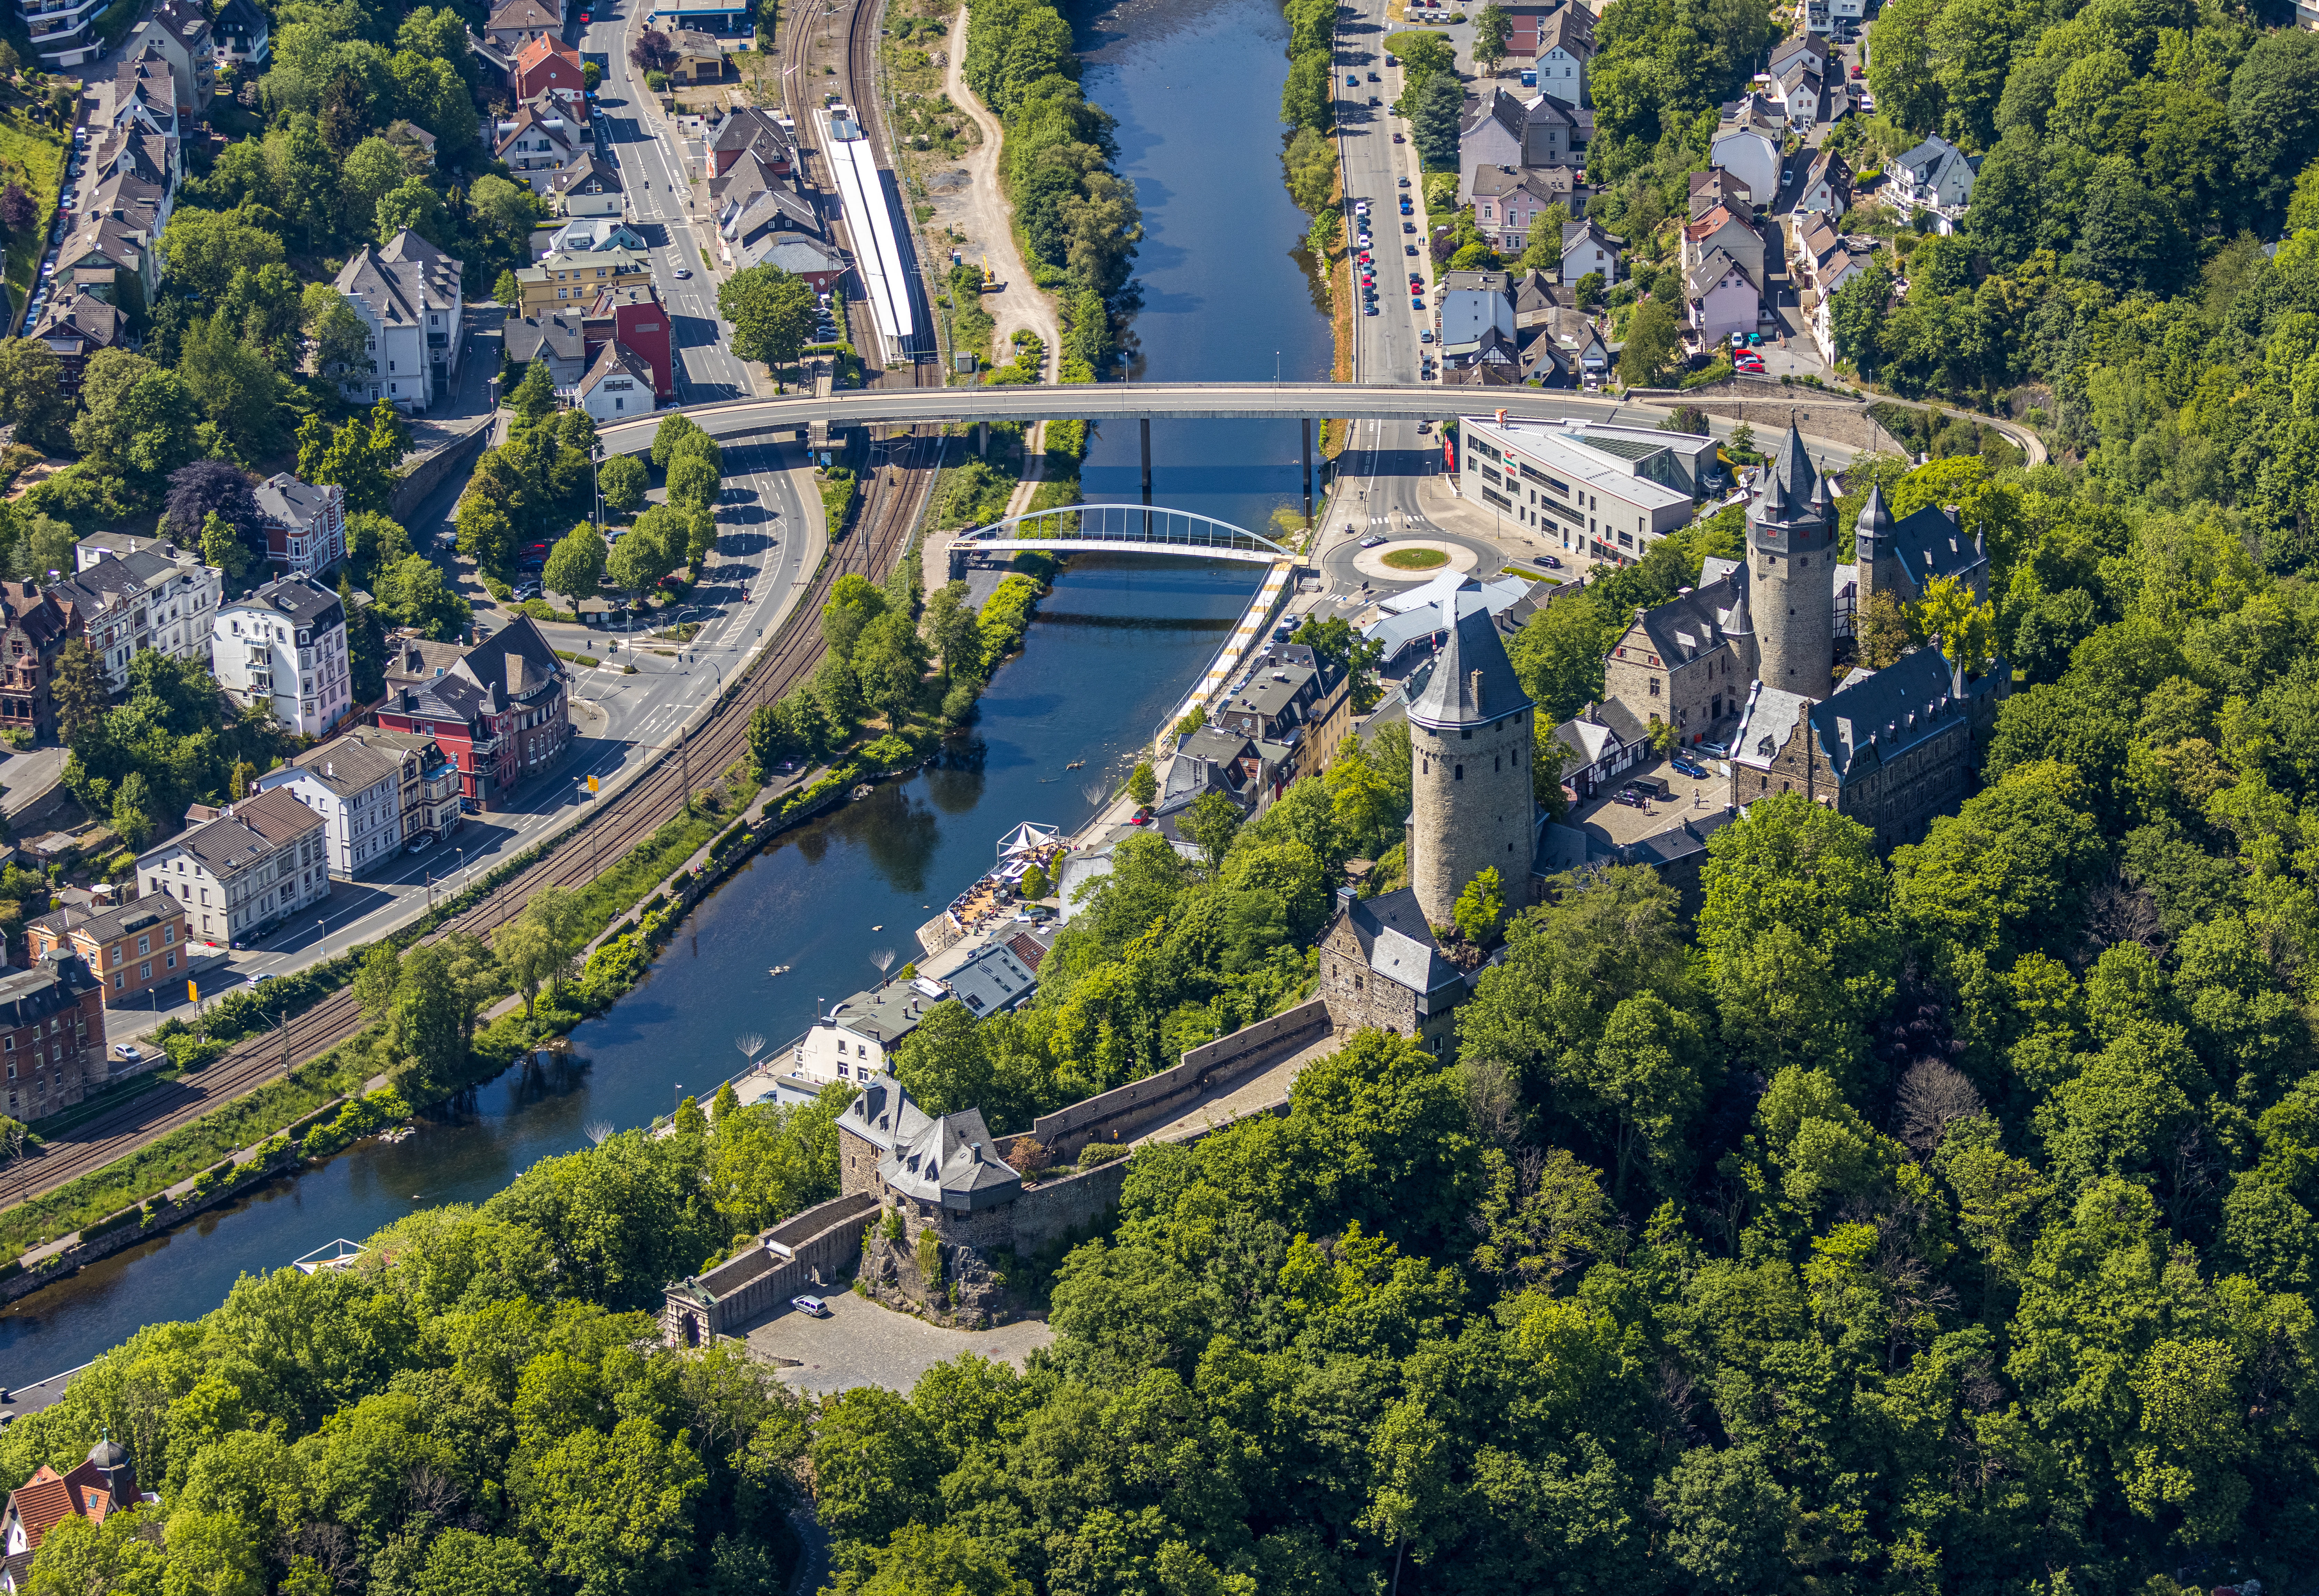 Altena Luftbild mit Burg, Fluss und Brücke.
